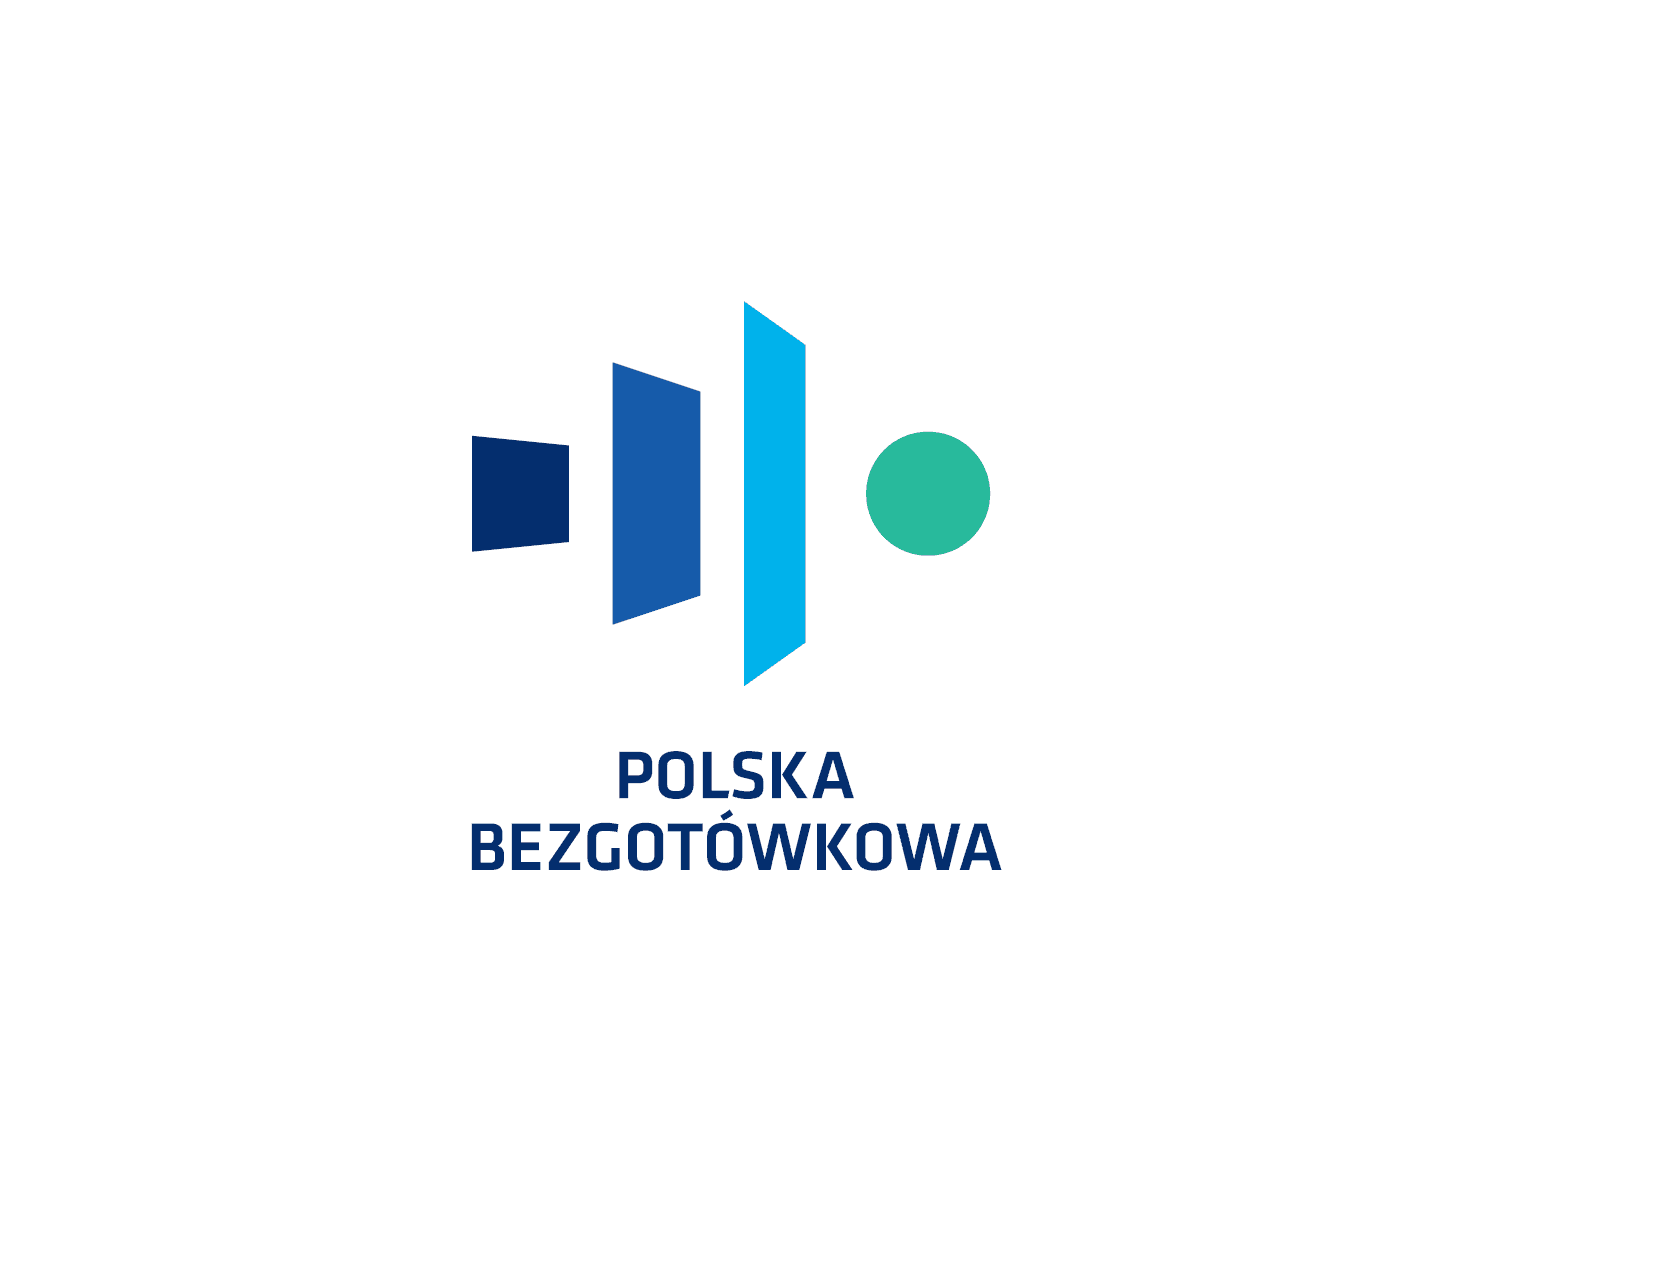   Grażyna Ciurzyńska nowym prezesem zarządu Fundacji Polska Bezgotówkowa 